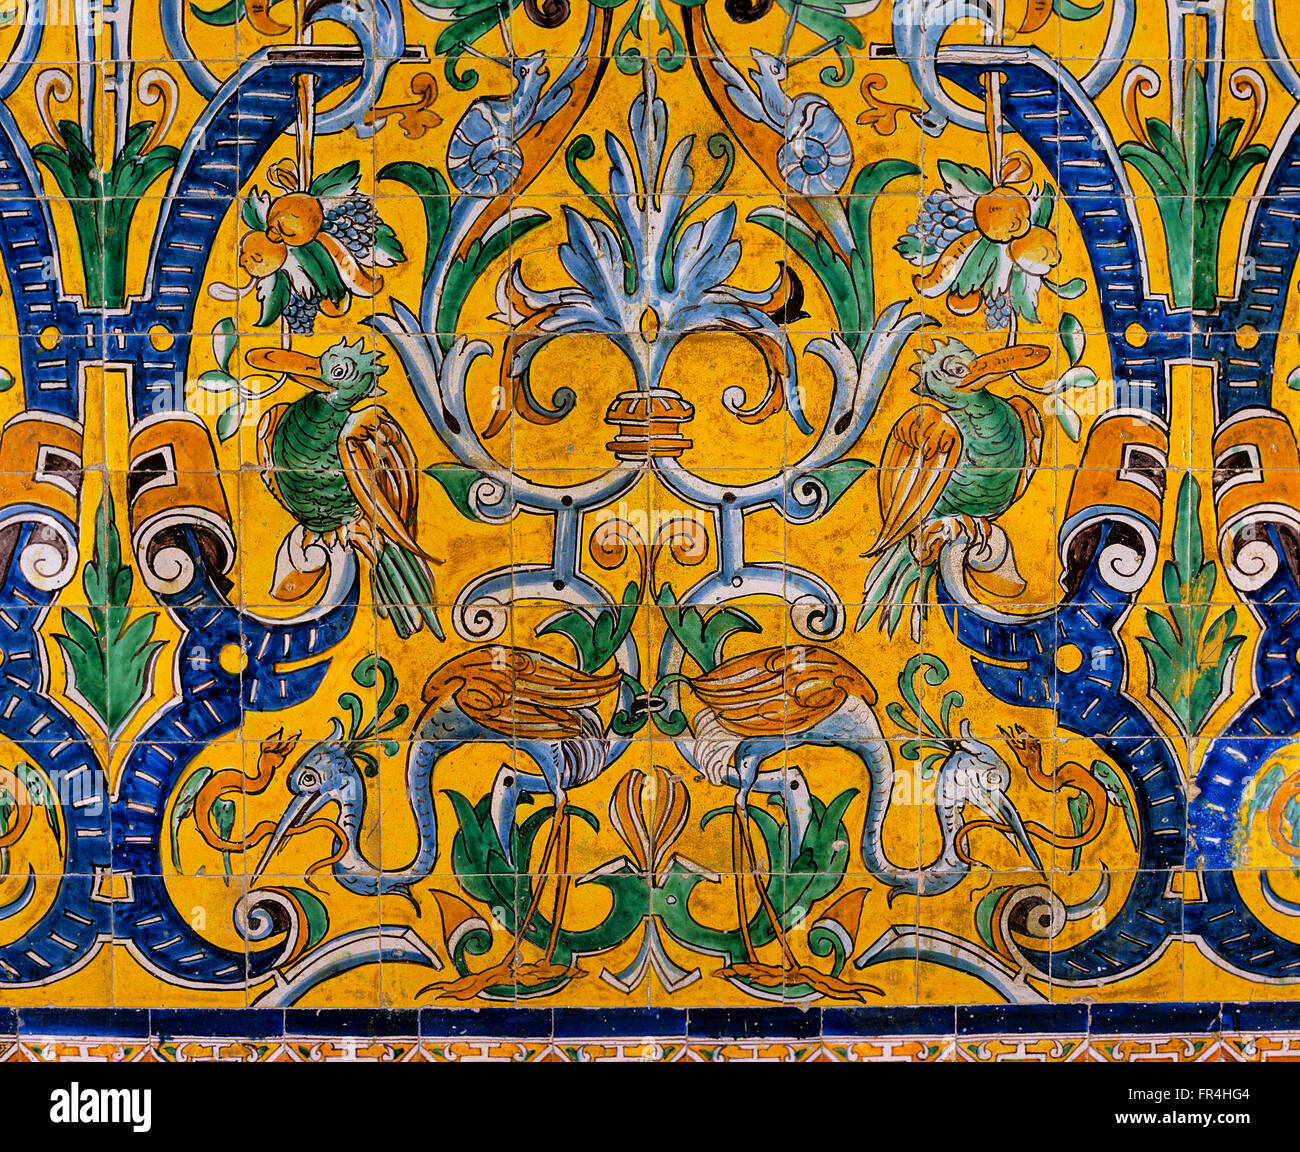 Carreaux émaillés 16ème siècle, palais gothique, reales alcazares, Séville, Andalousie, Espagne, Europe Banque D'Images